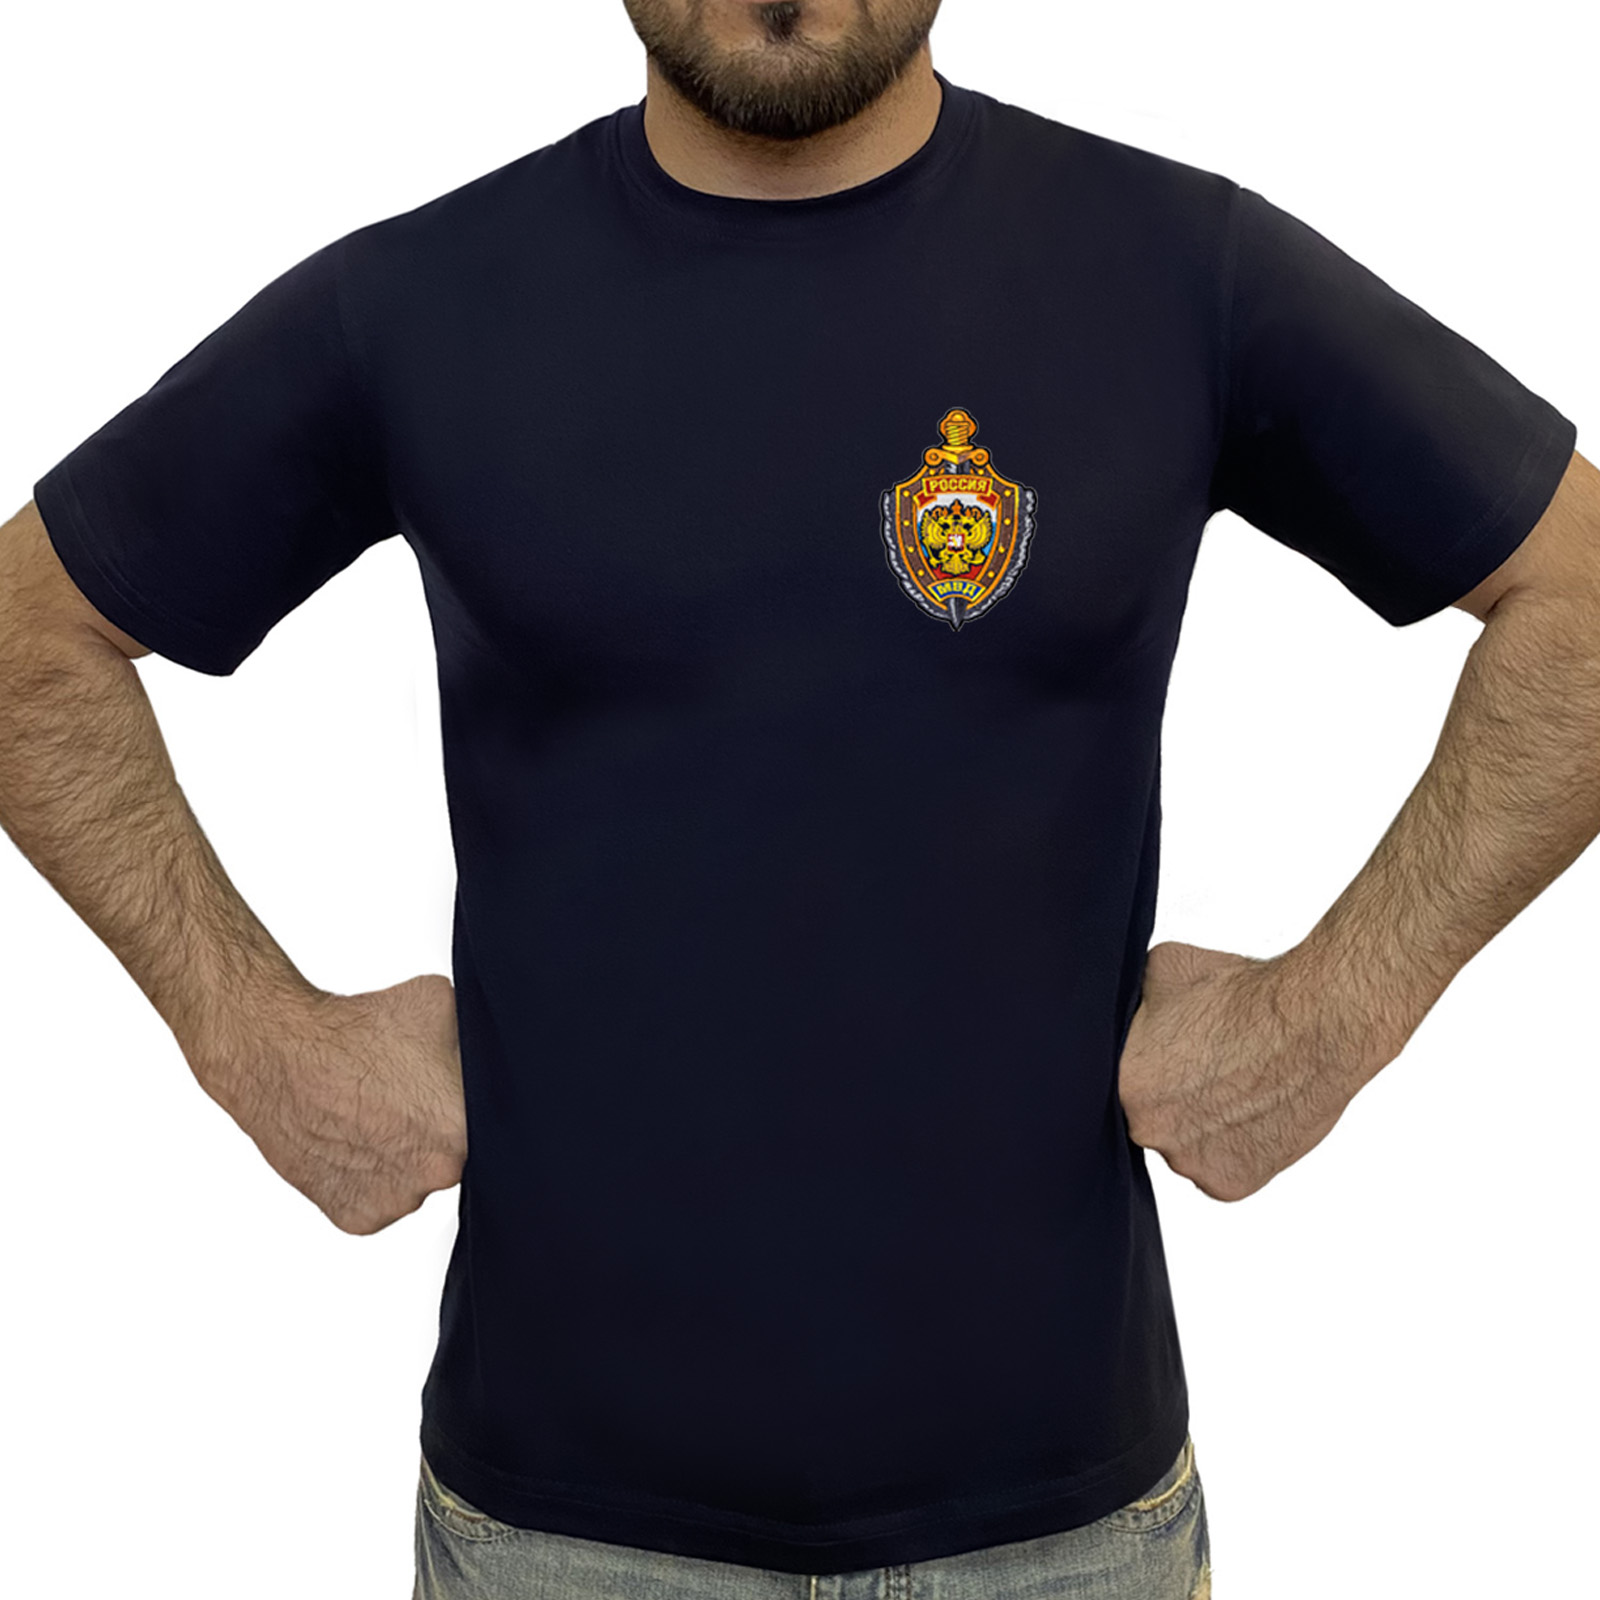 Купить в интернет магазине футболку МВД России